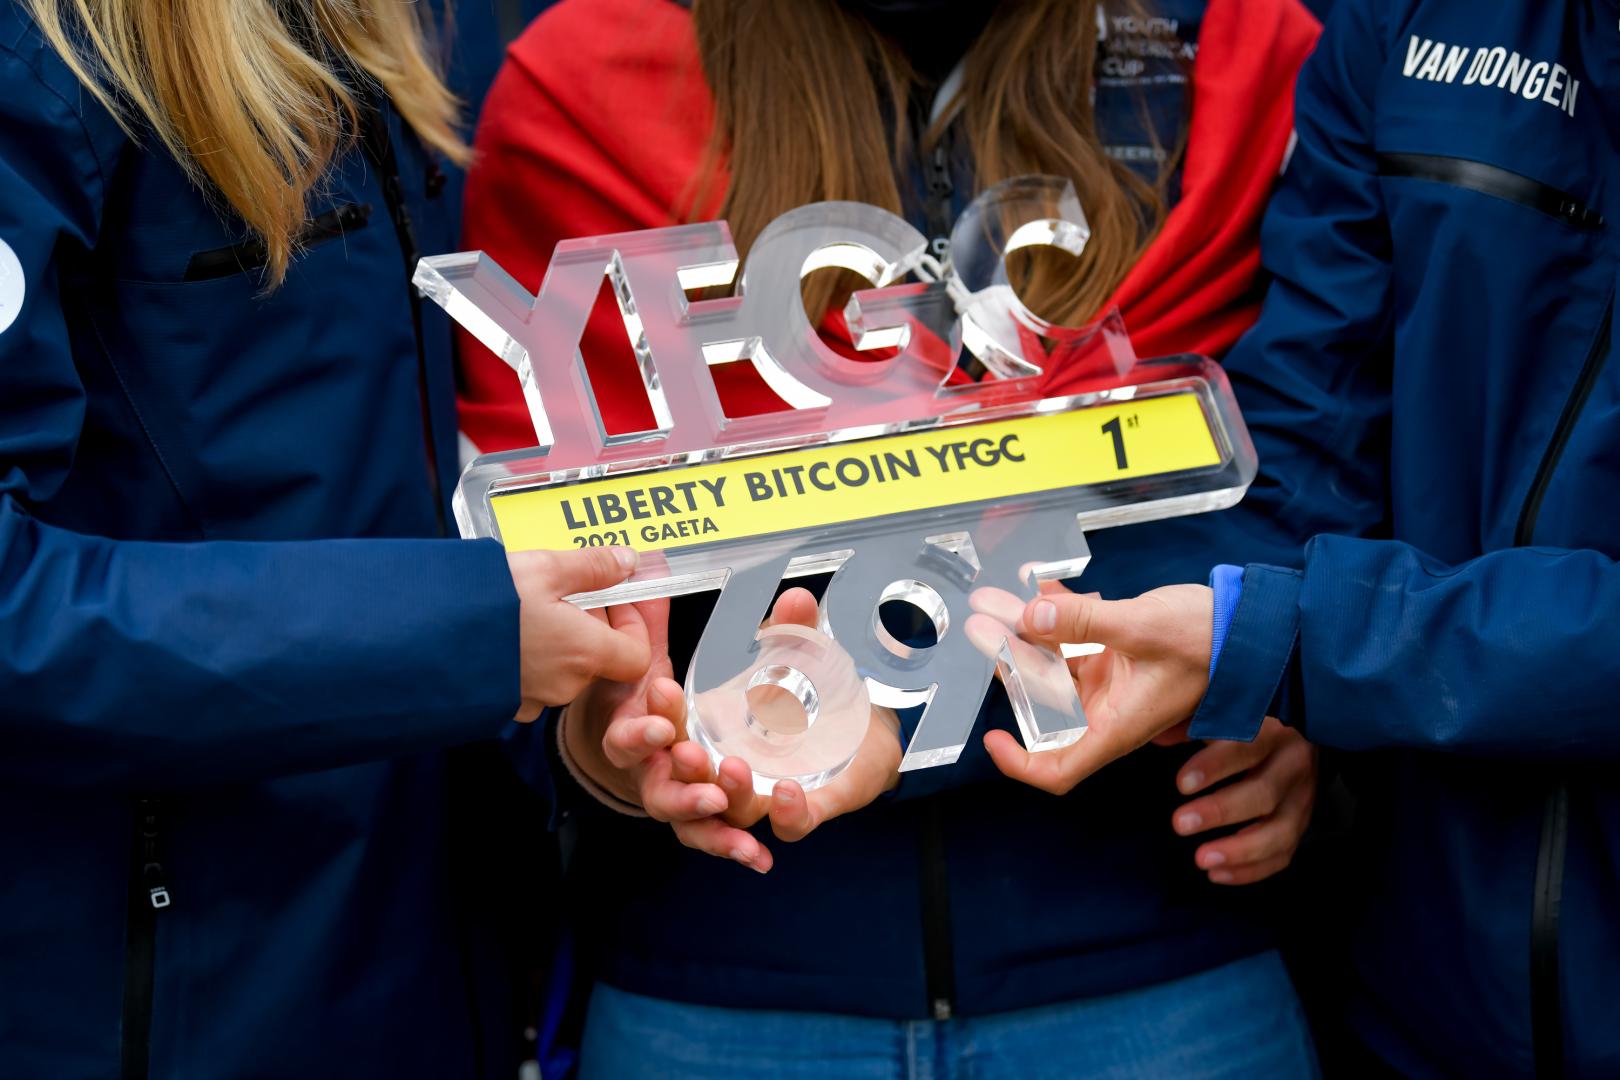 Il Team DutchSail - Janssen de Jong, domina e vince la prima tappa della Liberty Bitcoin YFGC, nel mito dell’Olandese Volante